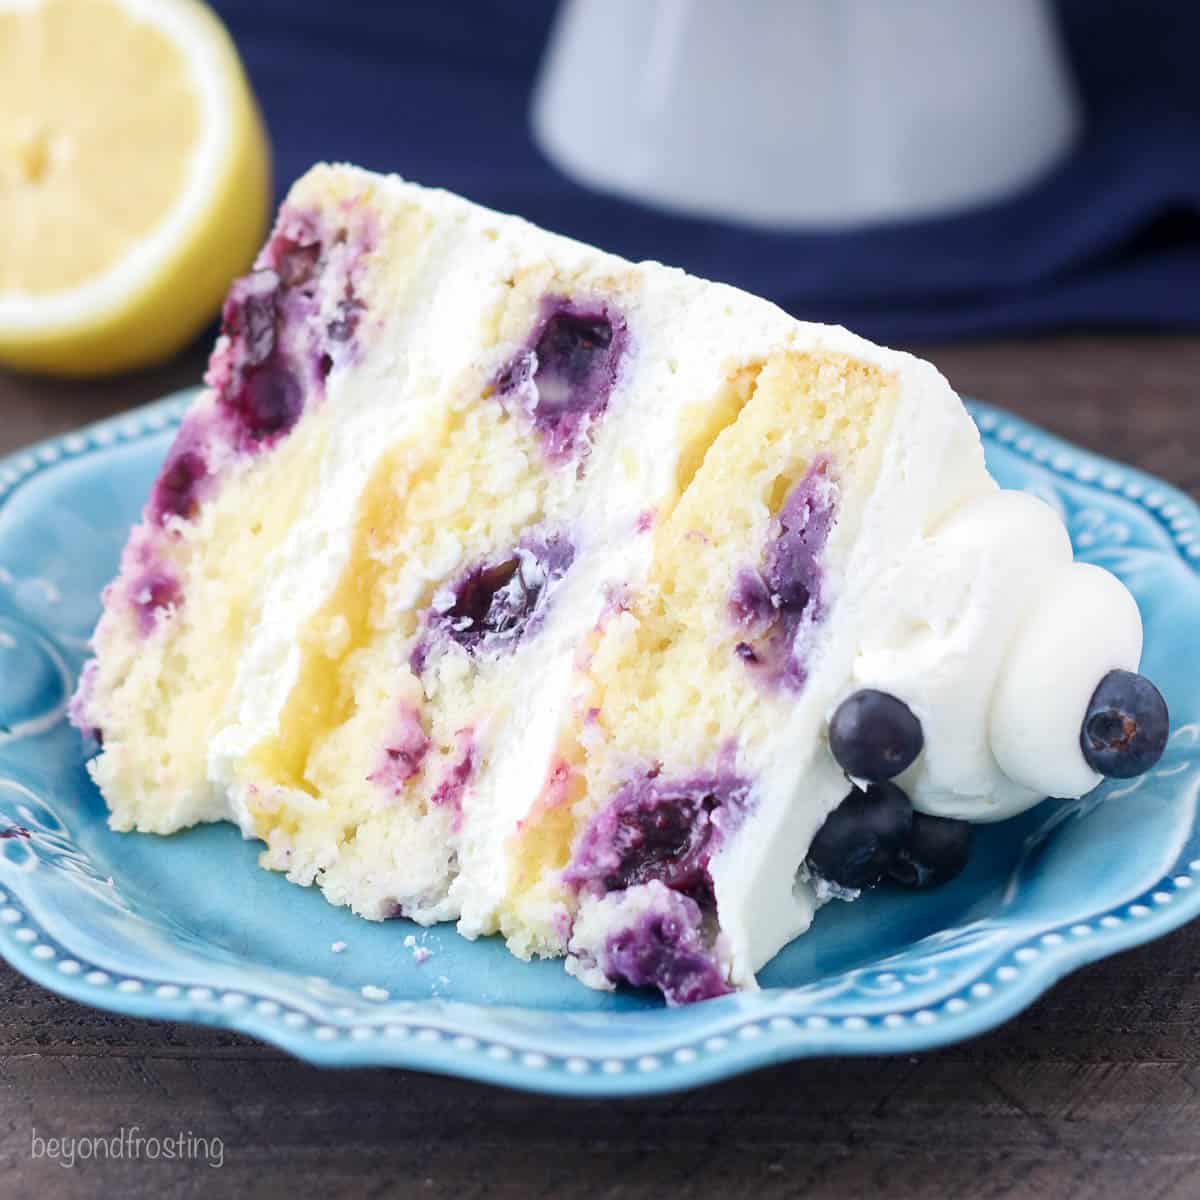 Blueberry cake online - Send & buy online best Blueberry cake for birthday